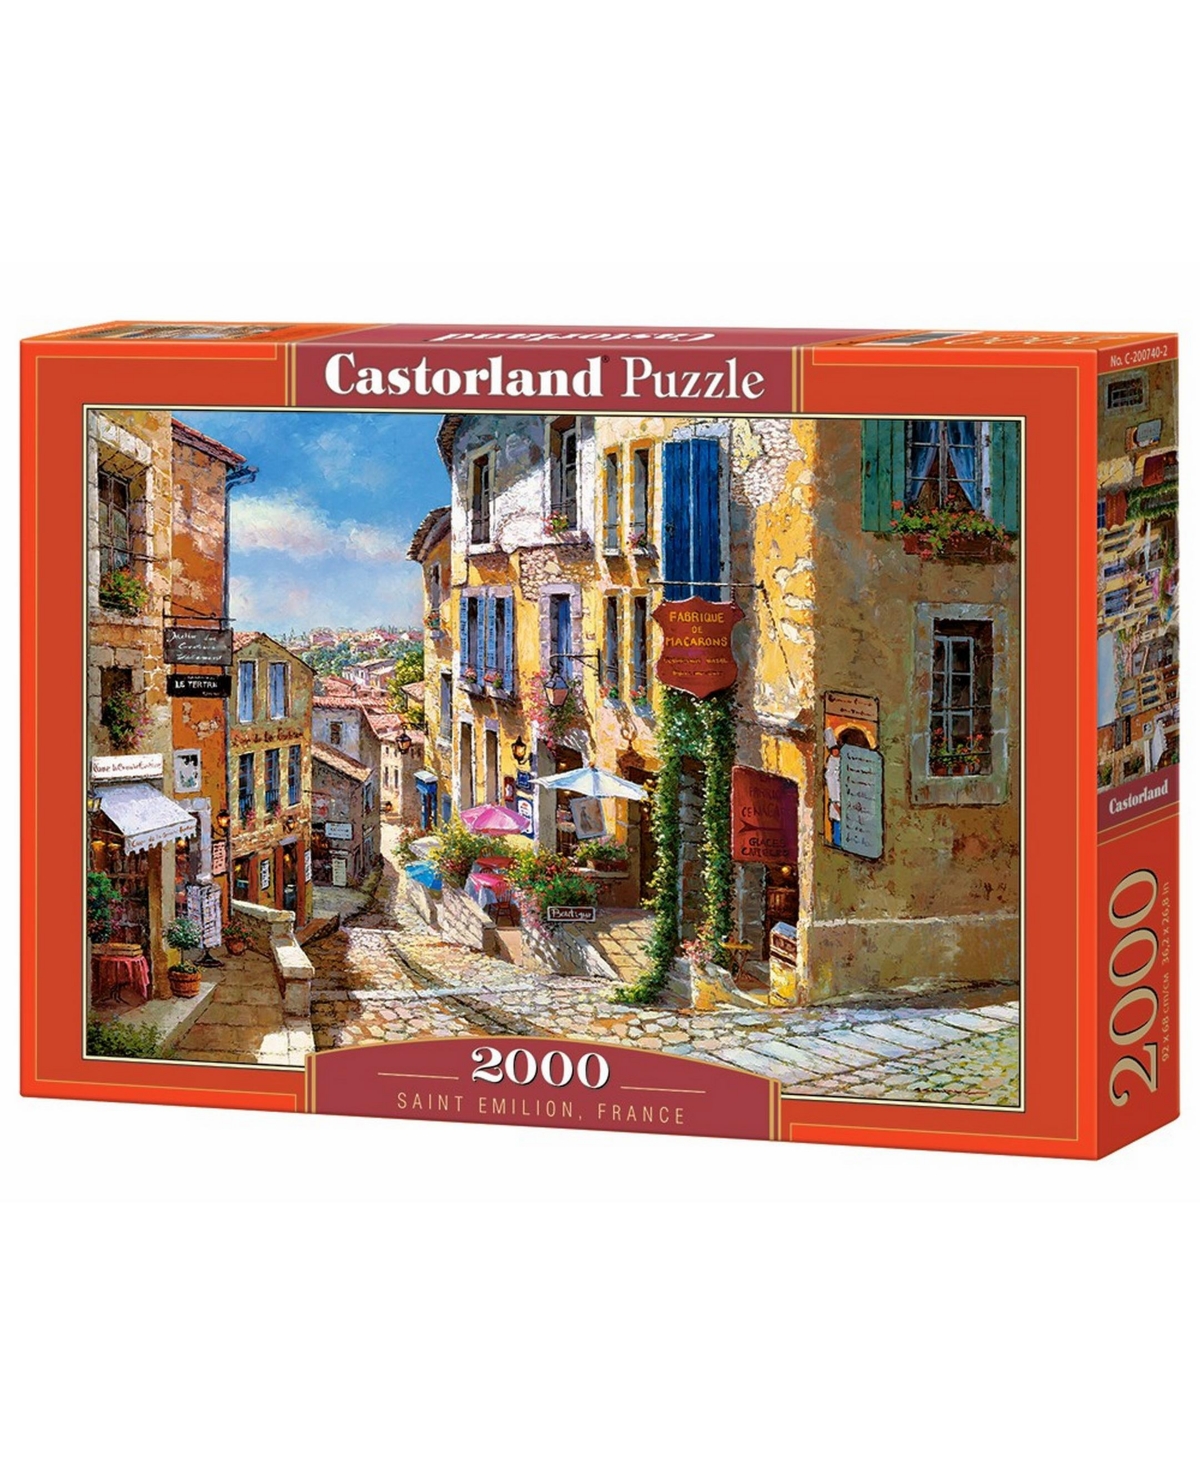 Castorland Saint Emilion, France Jigsaw Puzzle Set, 2000 Piece In Multicolor